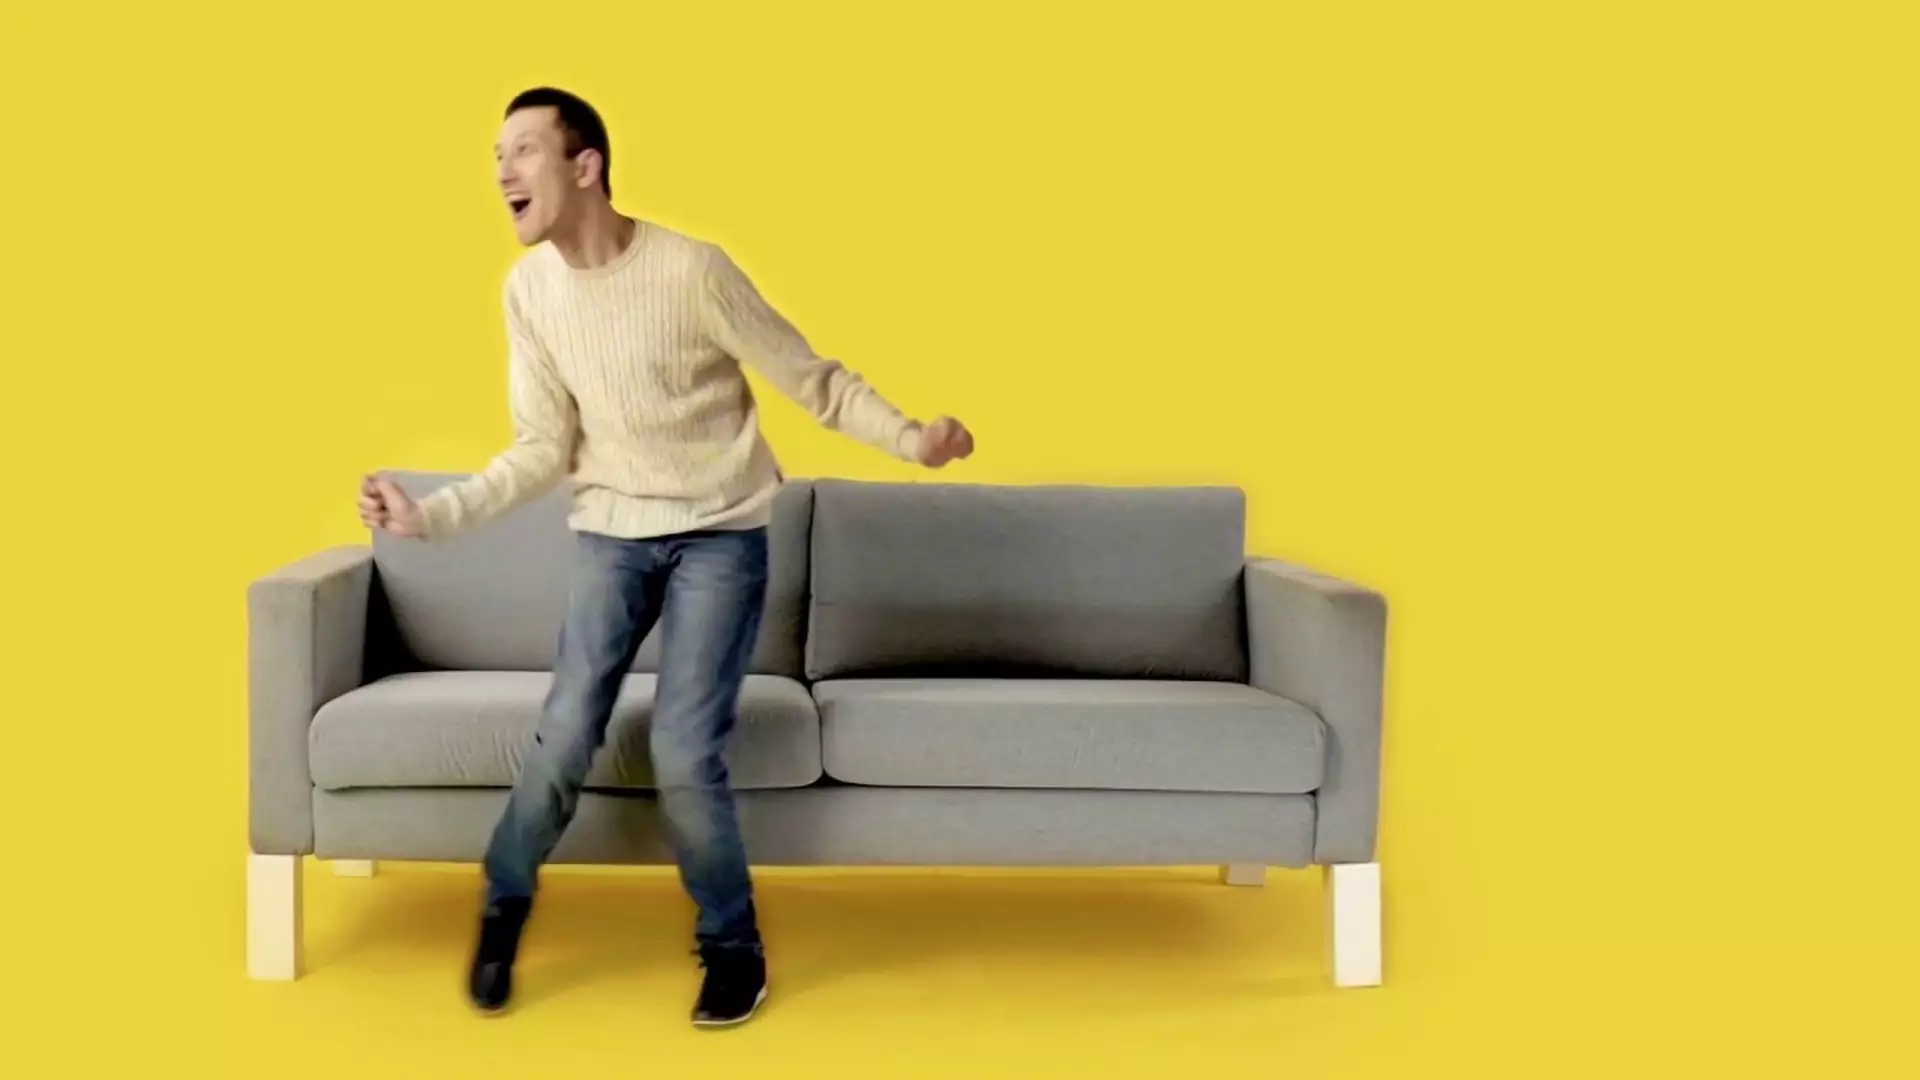 IKEA wypuściła akcesoria dla niepełnosprawnych. Pozwalają hakować meble firmy